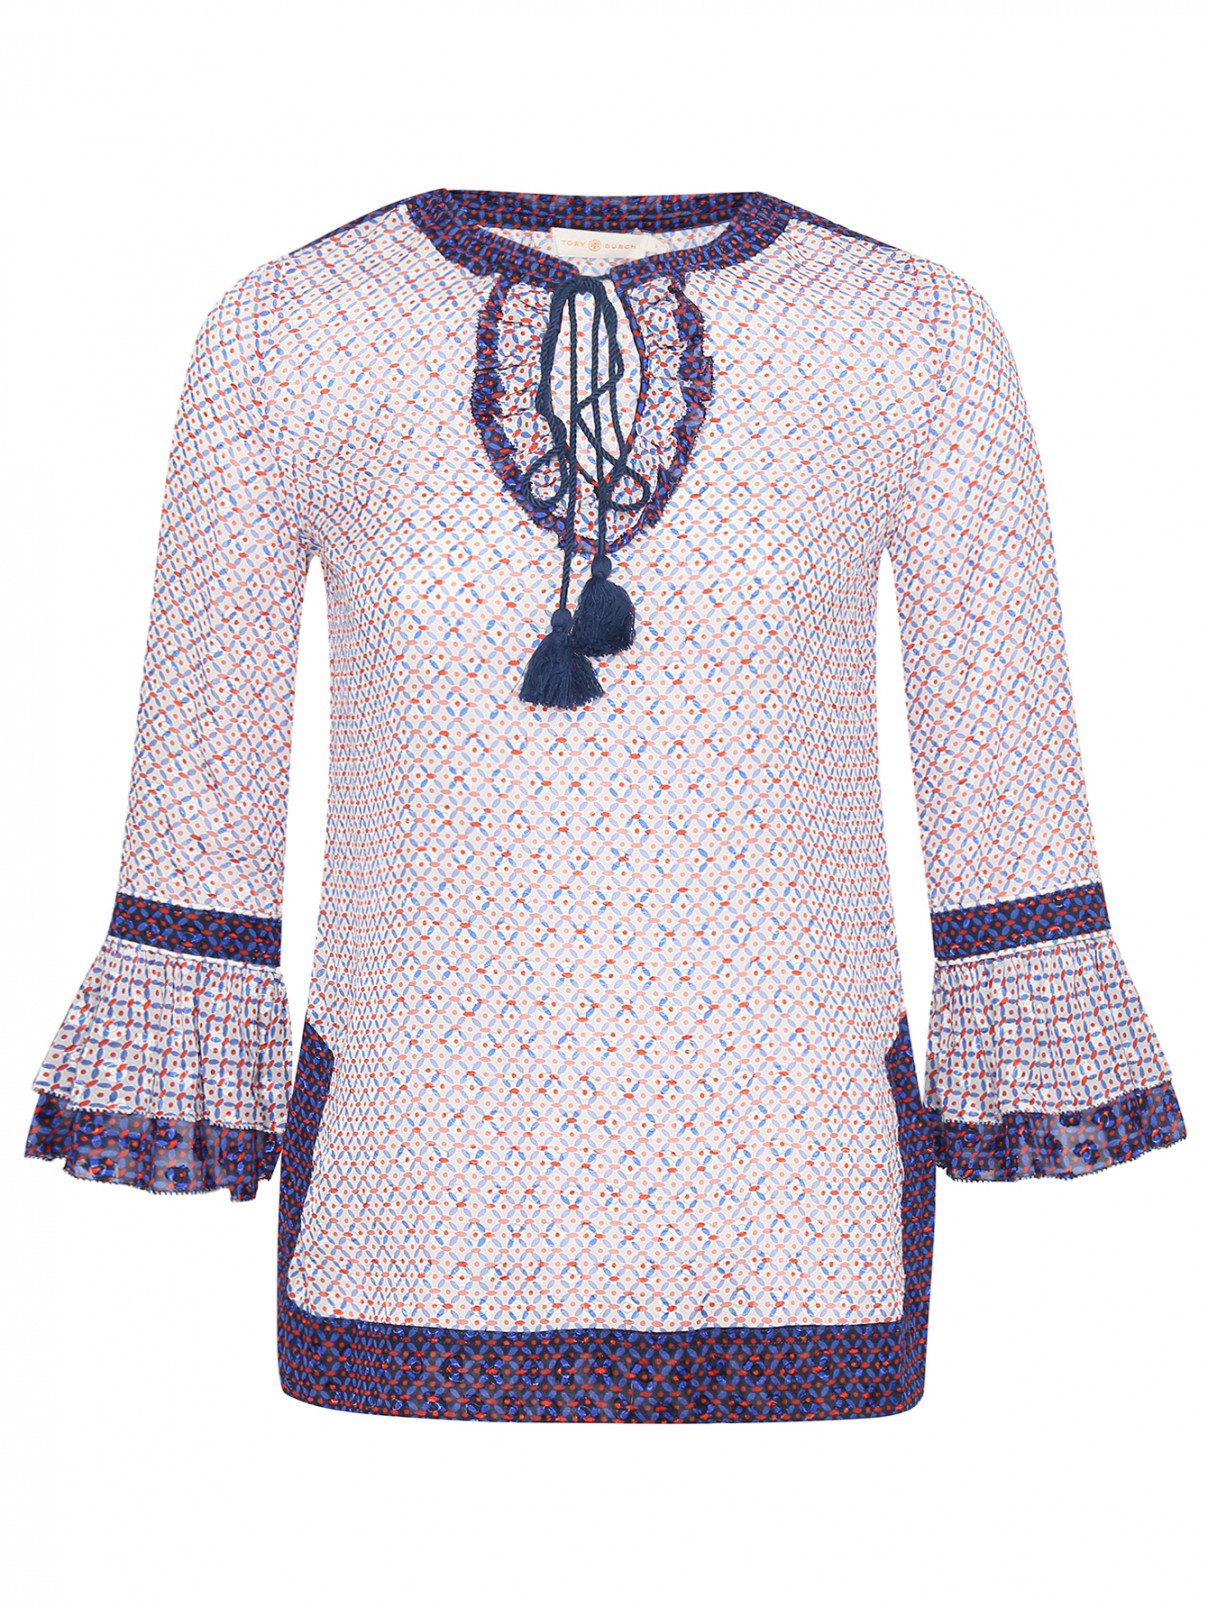 Блуза свободного кроя с узором Tory Burch  –  Общий вид  – Цвет:  Узор